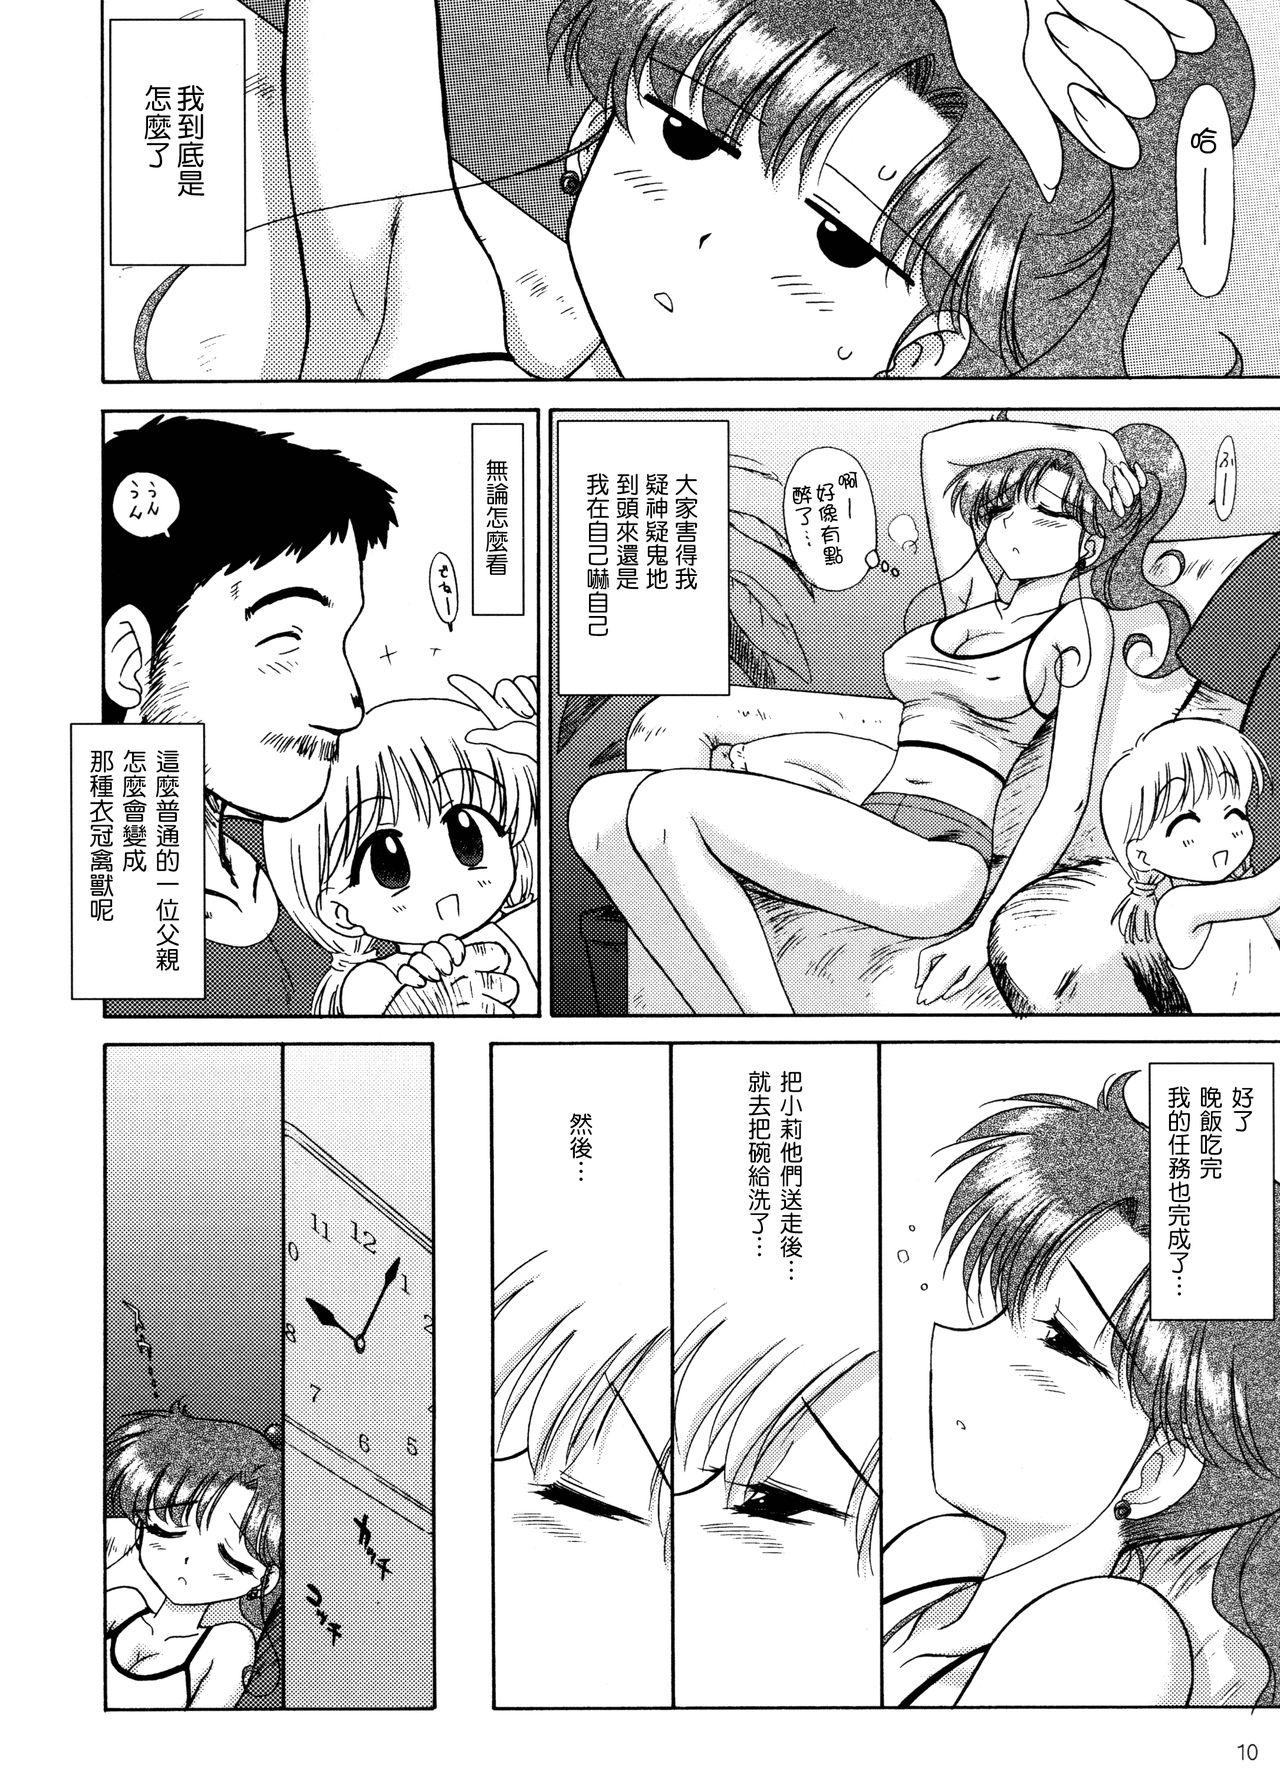 Porno IN A SILENT WAY - Sailor moon | bishoujo senshi sailor moon Trannies - Page 10